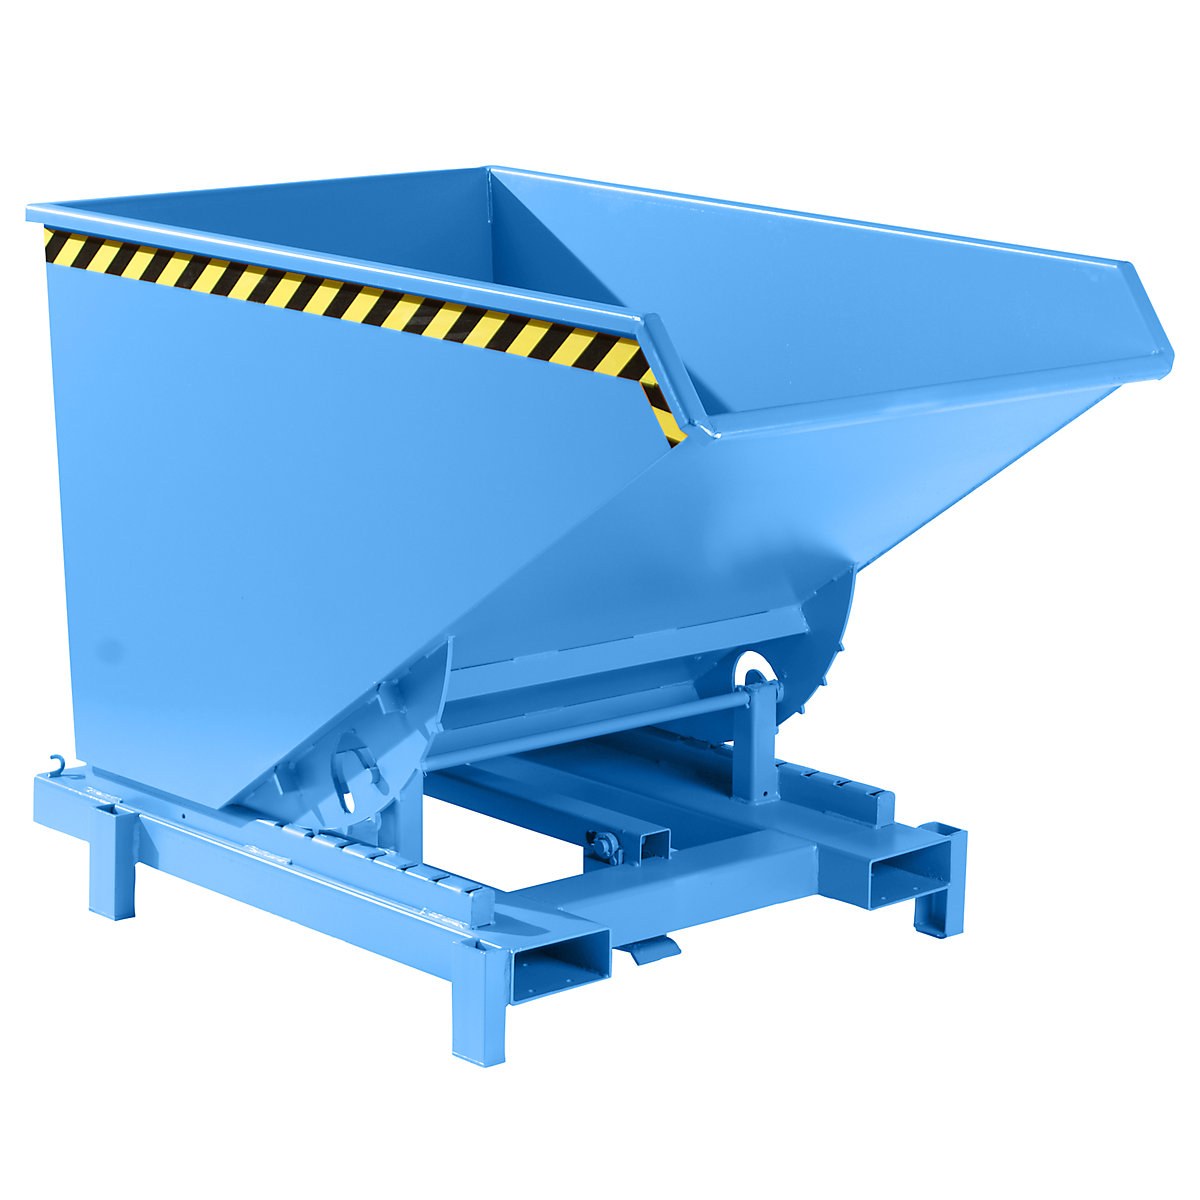 Kiepbak voor zware lasten – eurokraft pro, inhoud 1,2 m³, draagvermogen 4000 kg, lichtblauw RAL 5012-8